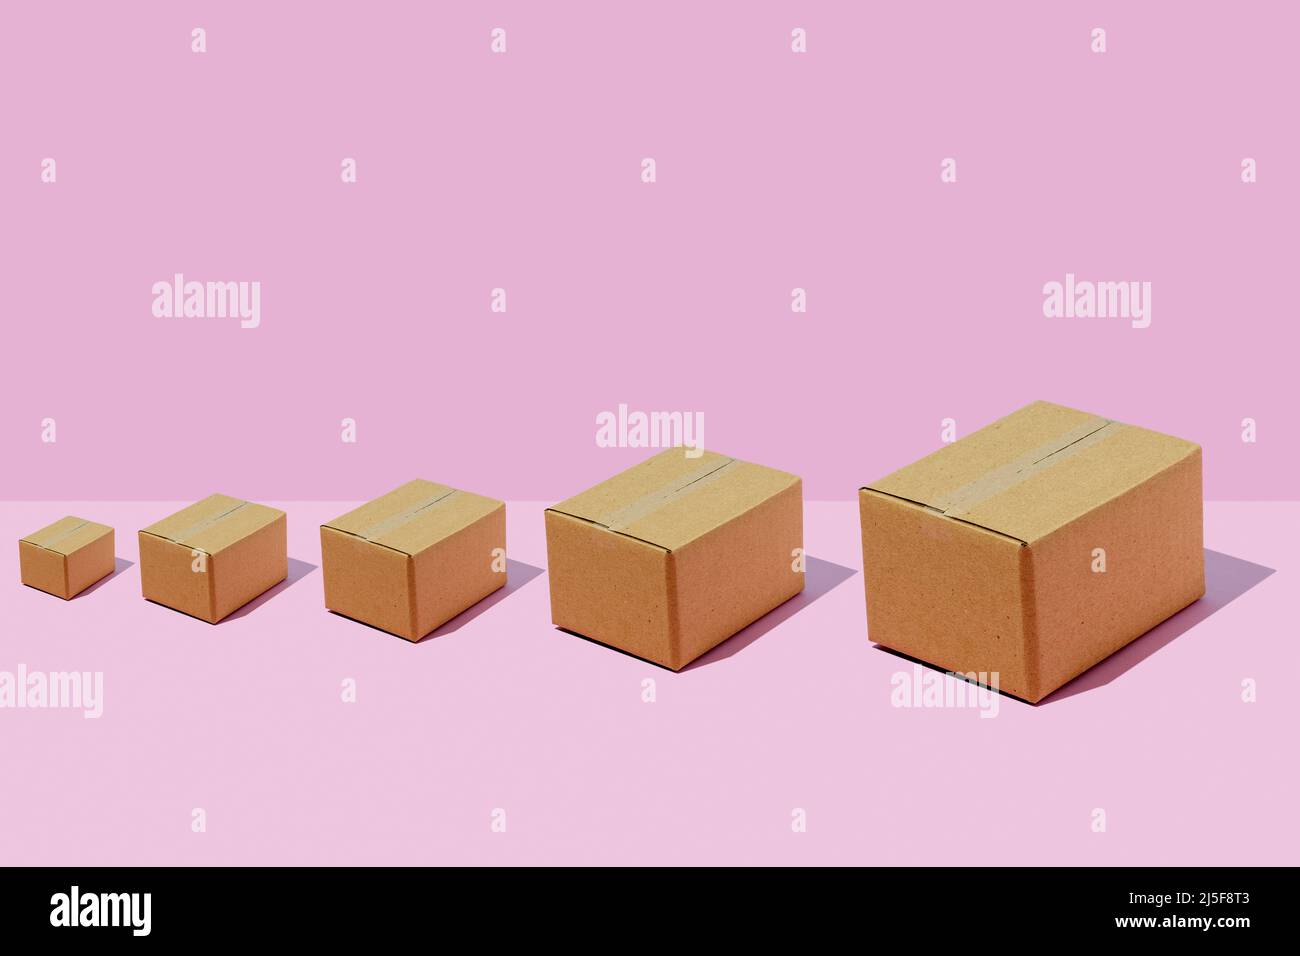 Boîtes en carton de différentes tailles rangées sur fond violet. Concept de livraison de colis. Banque D'Images